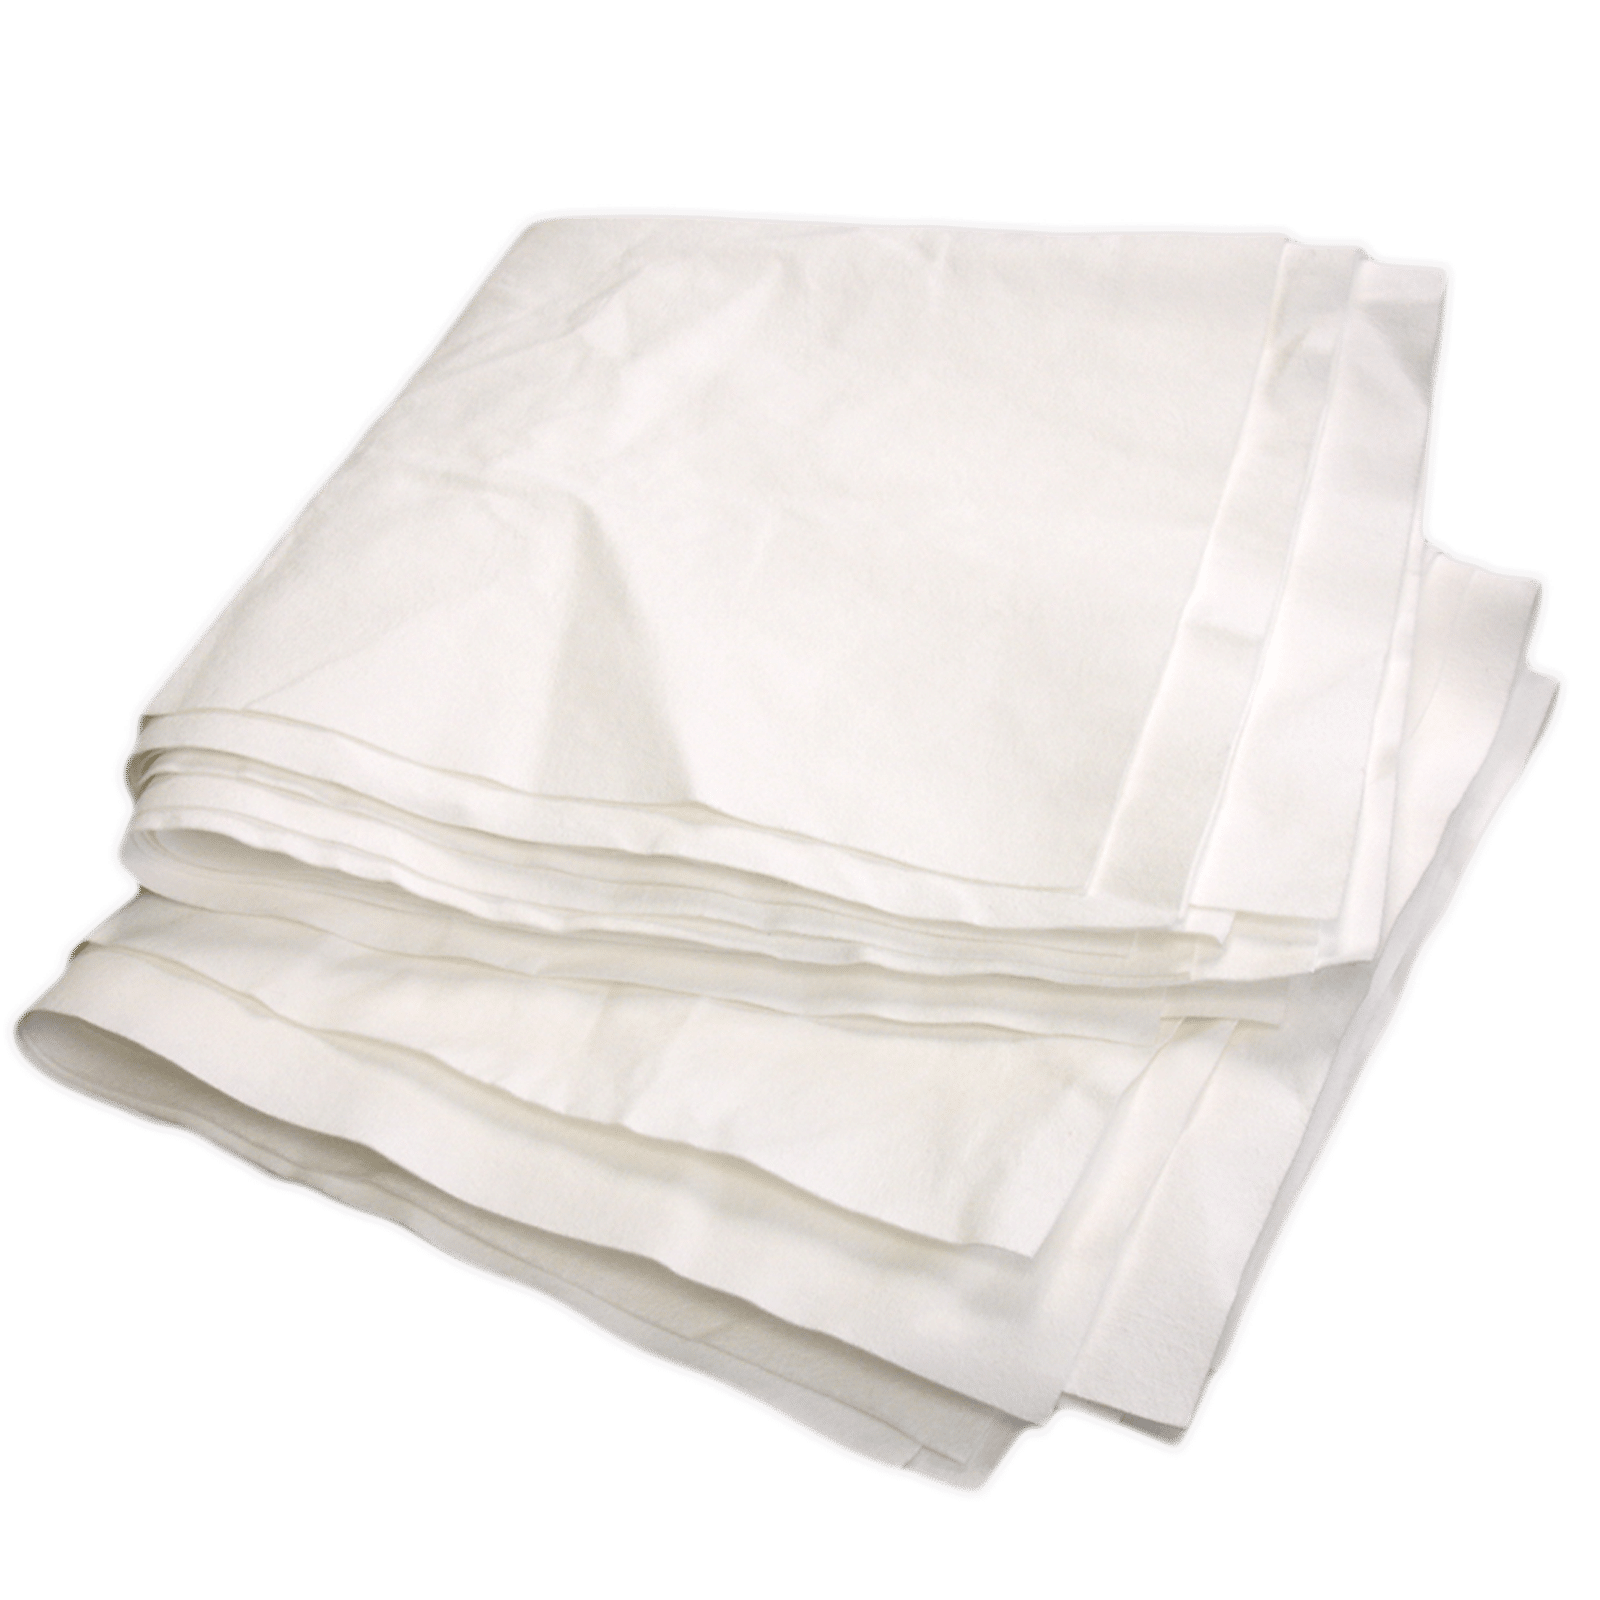 LINT-FREE WIPES Cotton Pad 200pcs - TDI, Inc